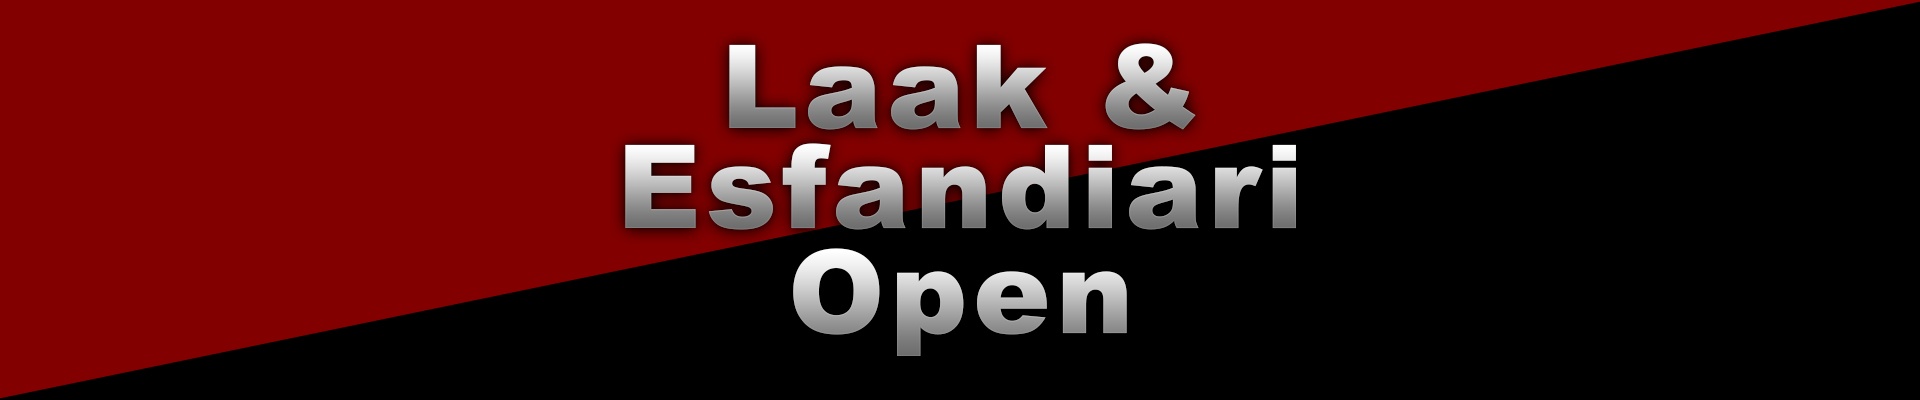 Laak & Esfandiari Open 2012